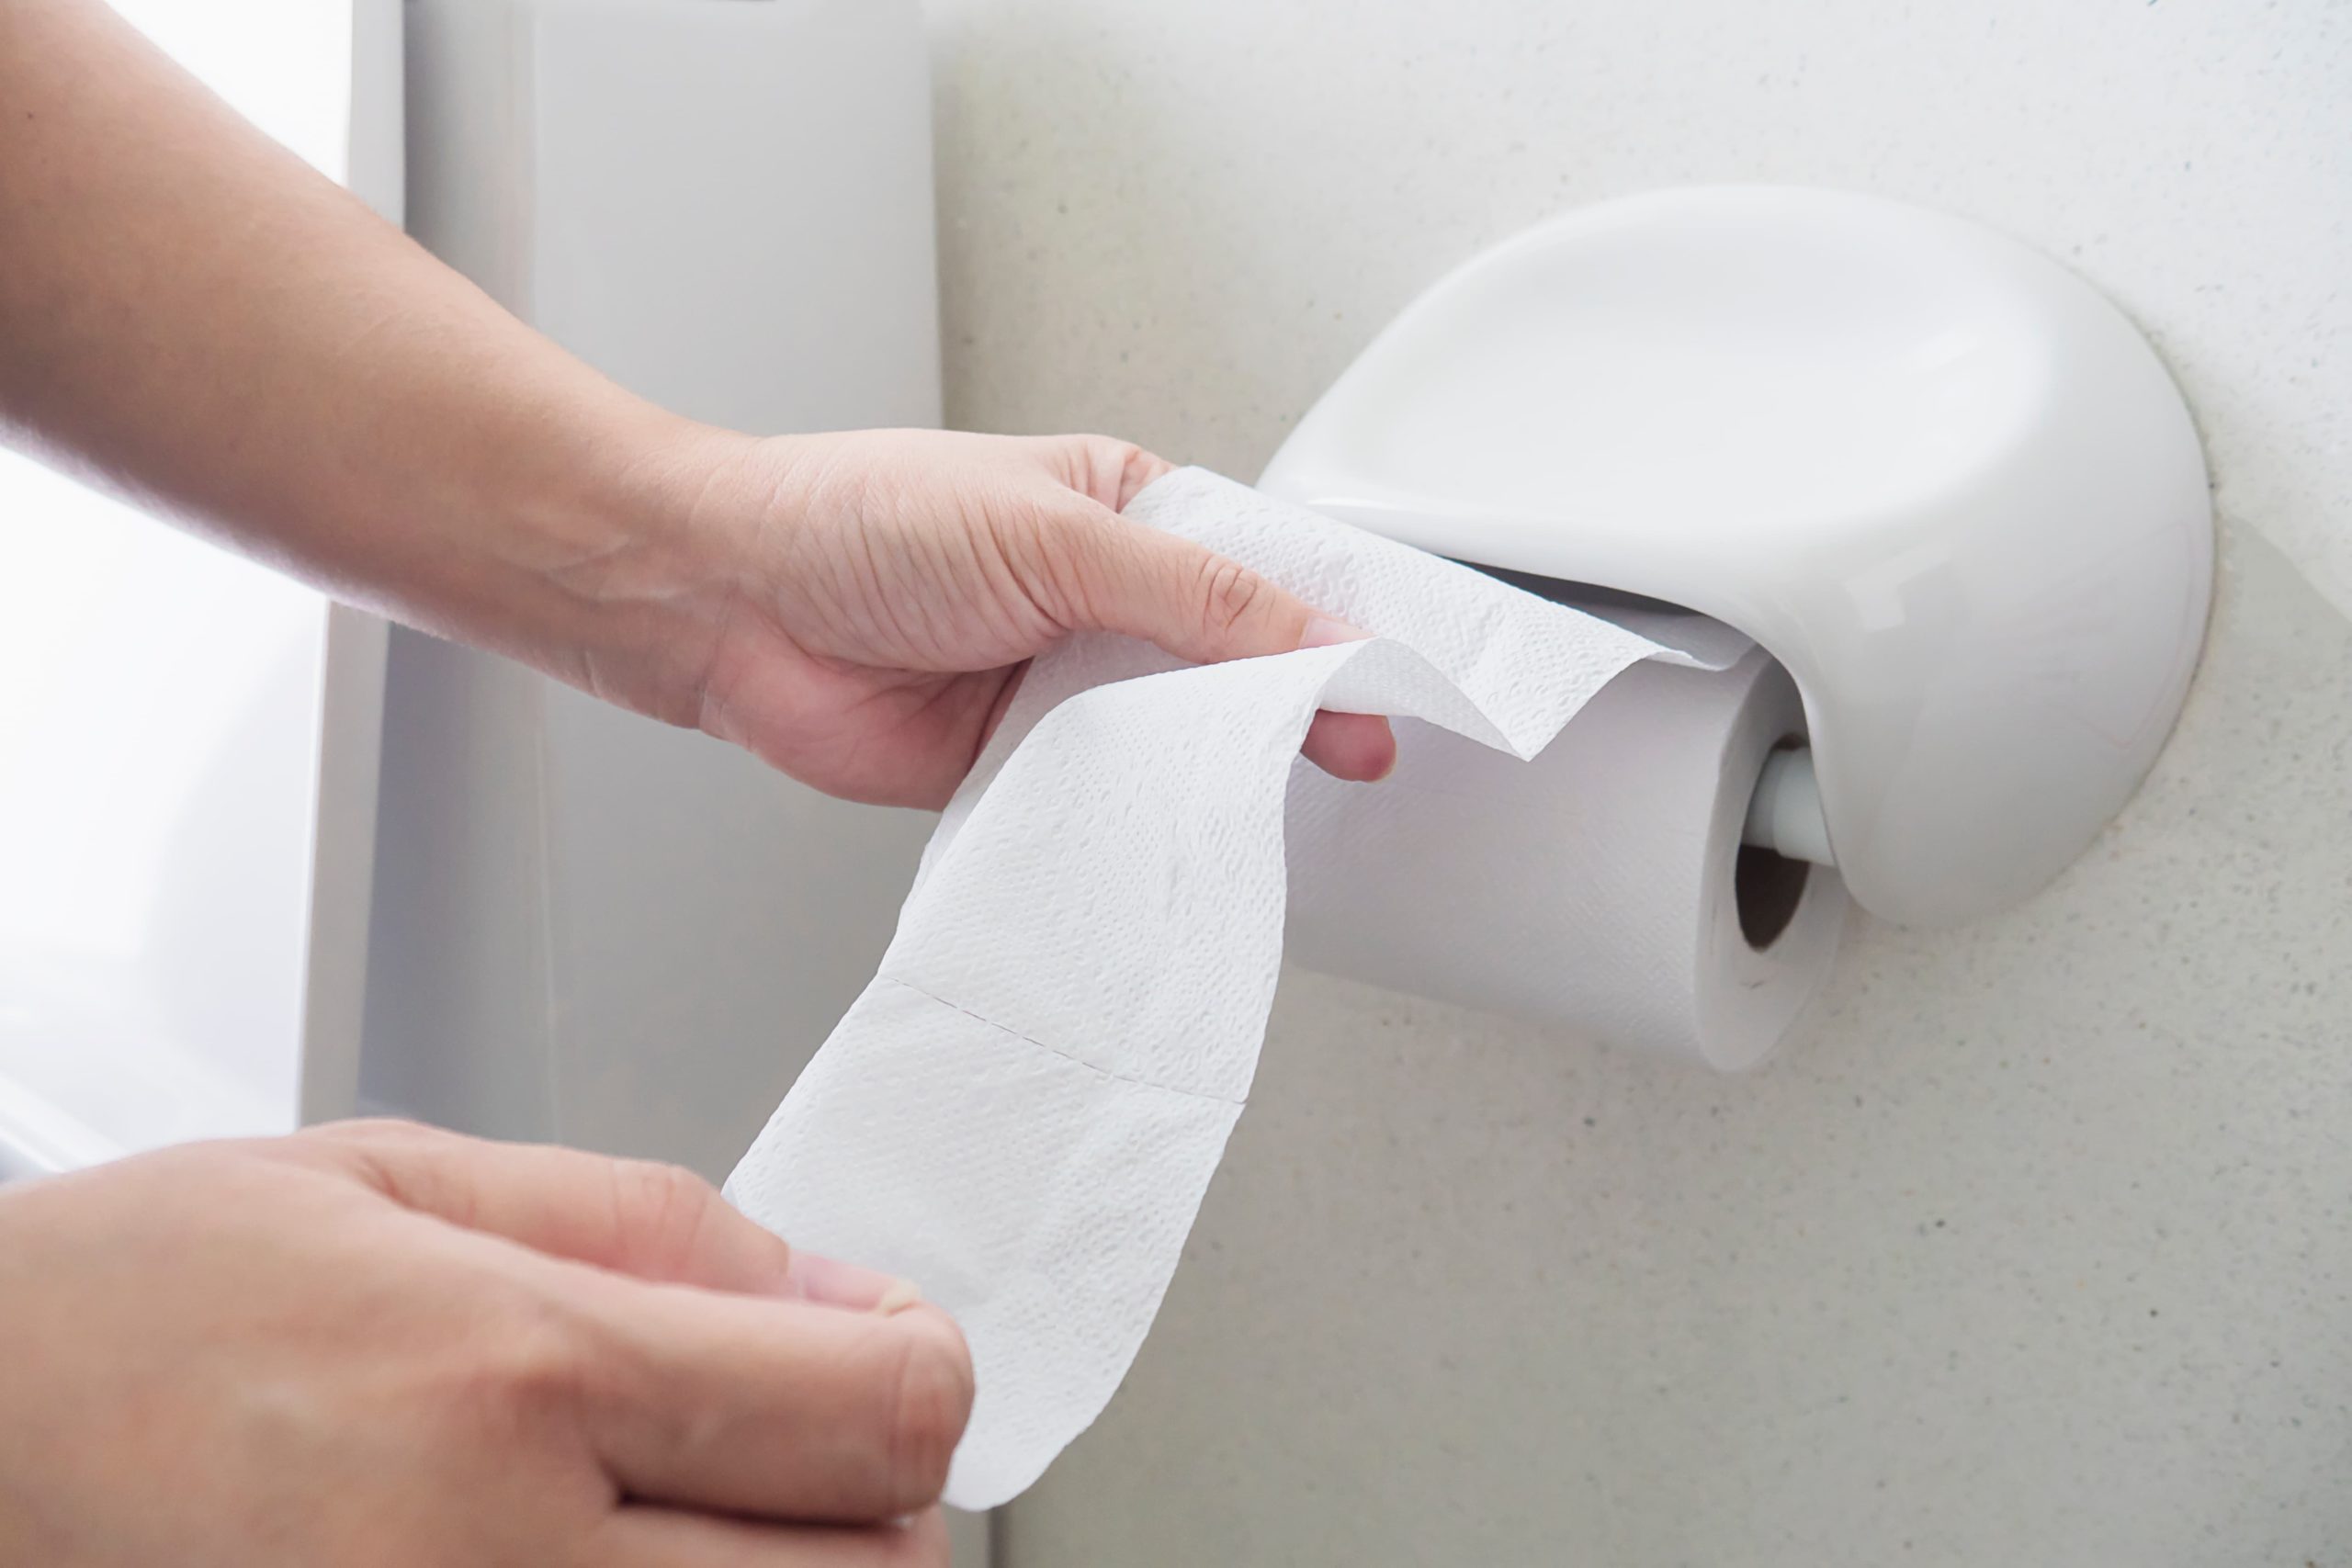 Vaso entupido: mãos femininas retirando papel do rolo em uma cabine de banheiro